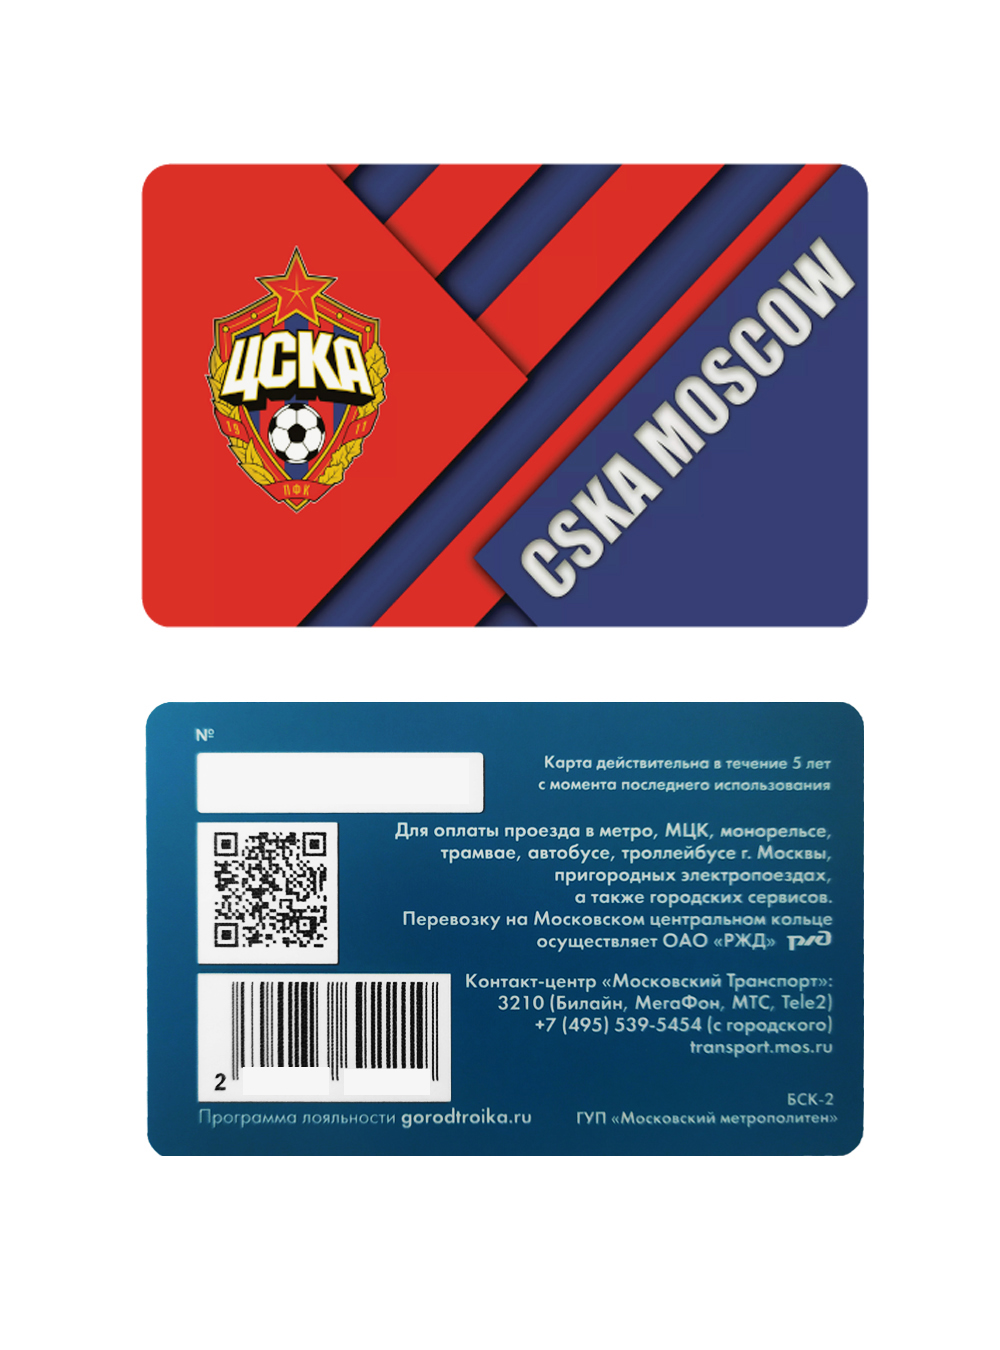 Карта-тройка "CSKA MOSCOW" от Cskashop